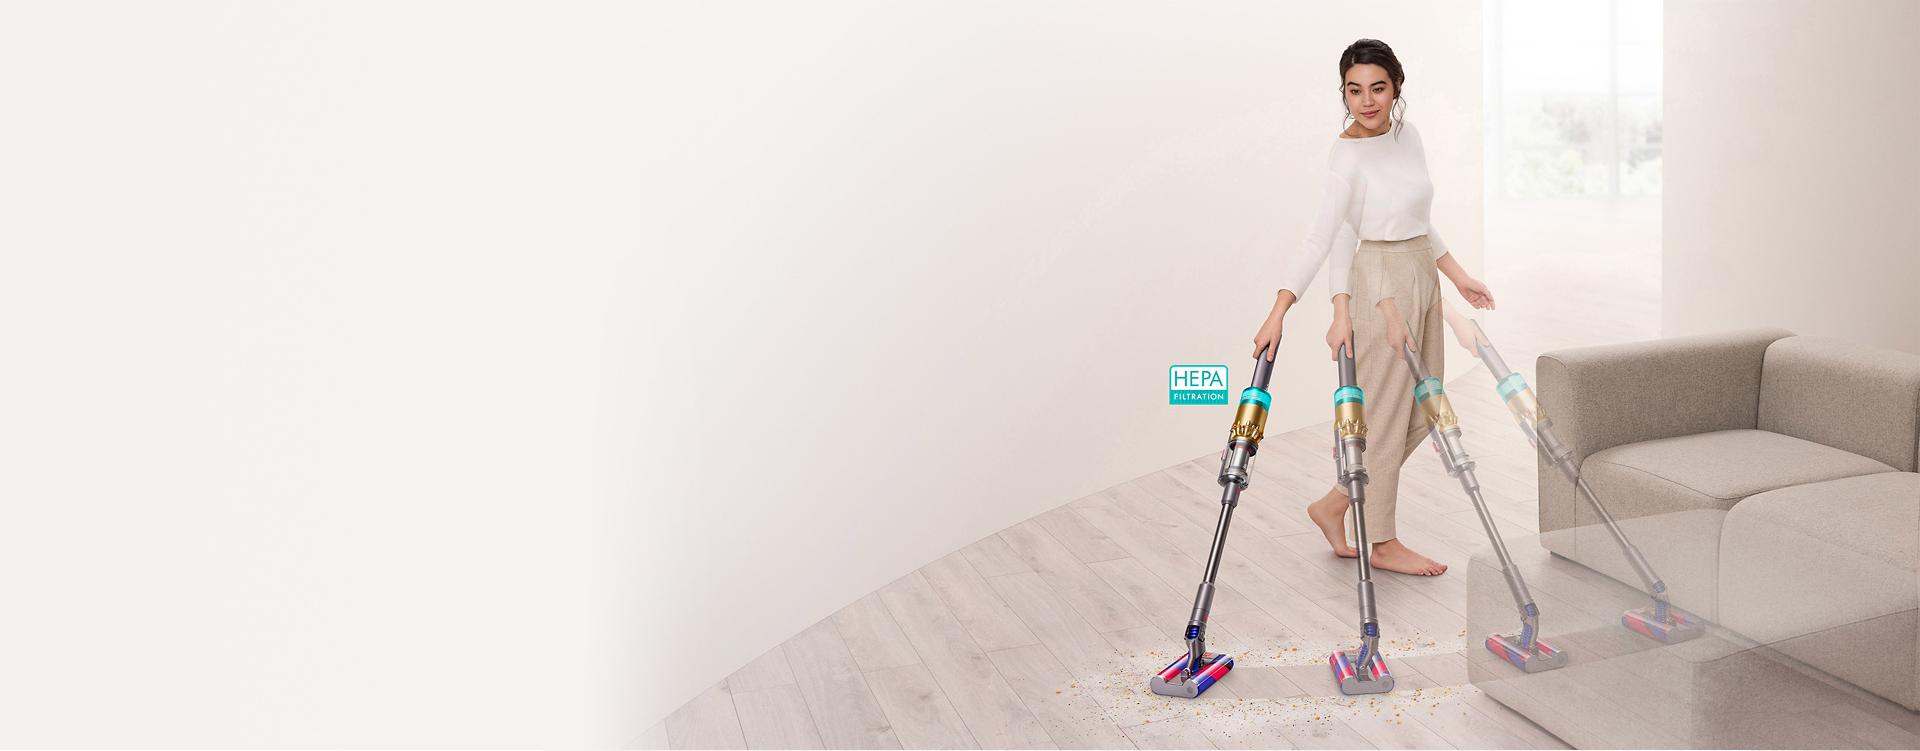 다이슨 옴니-글라이드 무선 청소기로 소파 주변의 마룻바닥을 청소하는 여성.